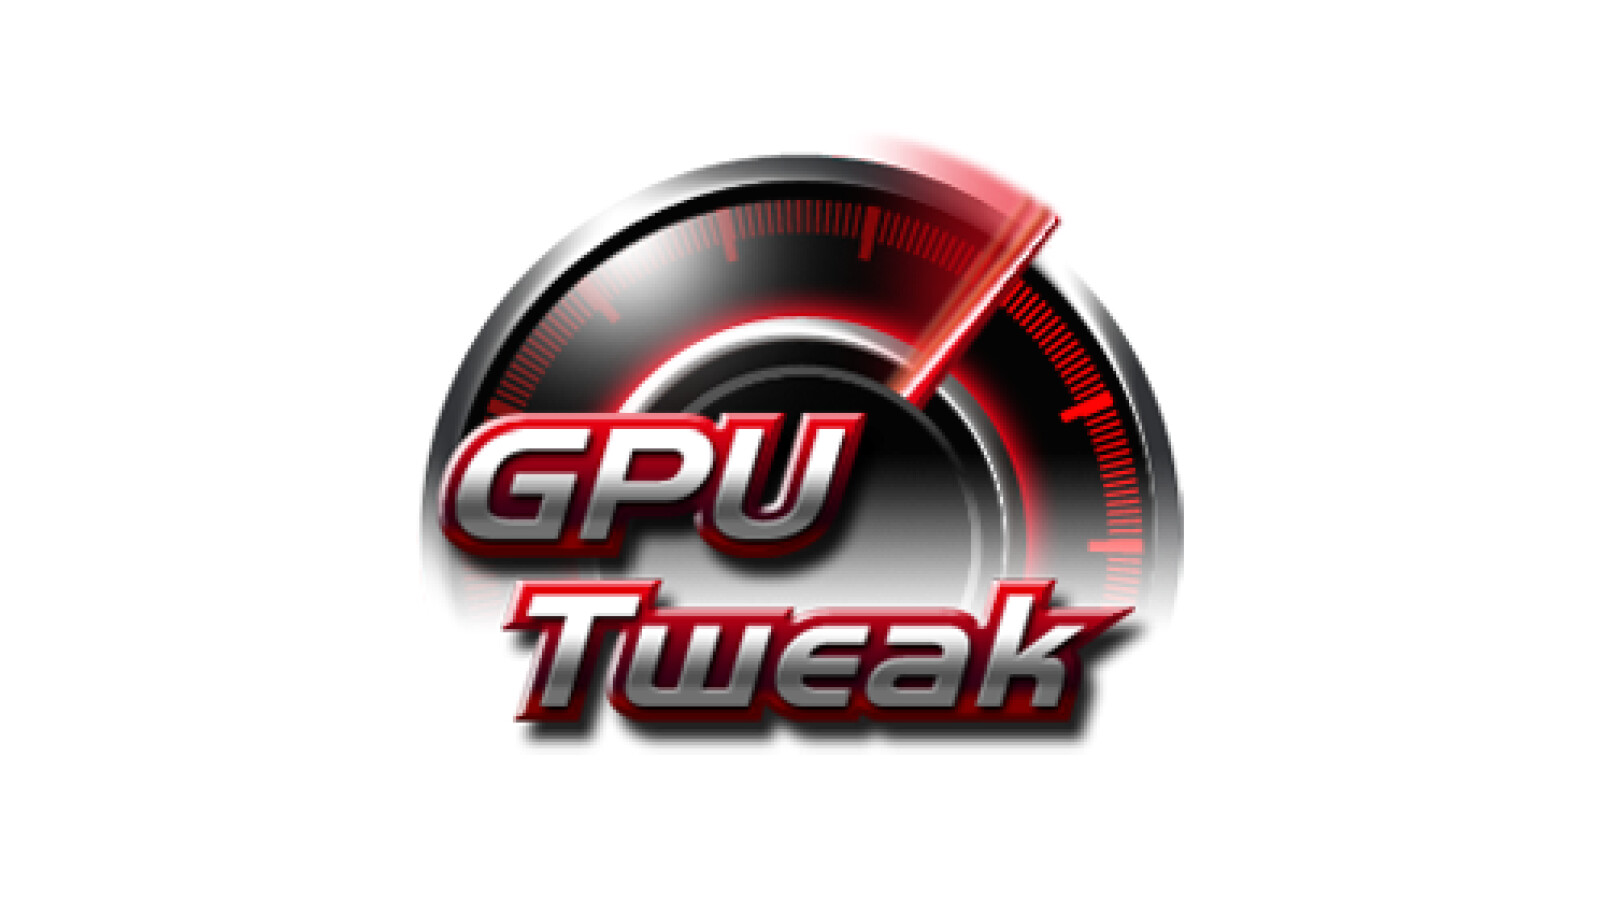 ASUS GPU Tweak II 2.3.9.0 / III 1.6.9.4 instal the new version for android